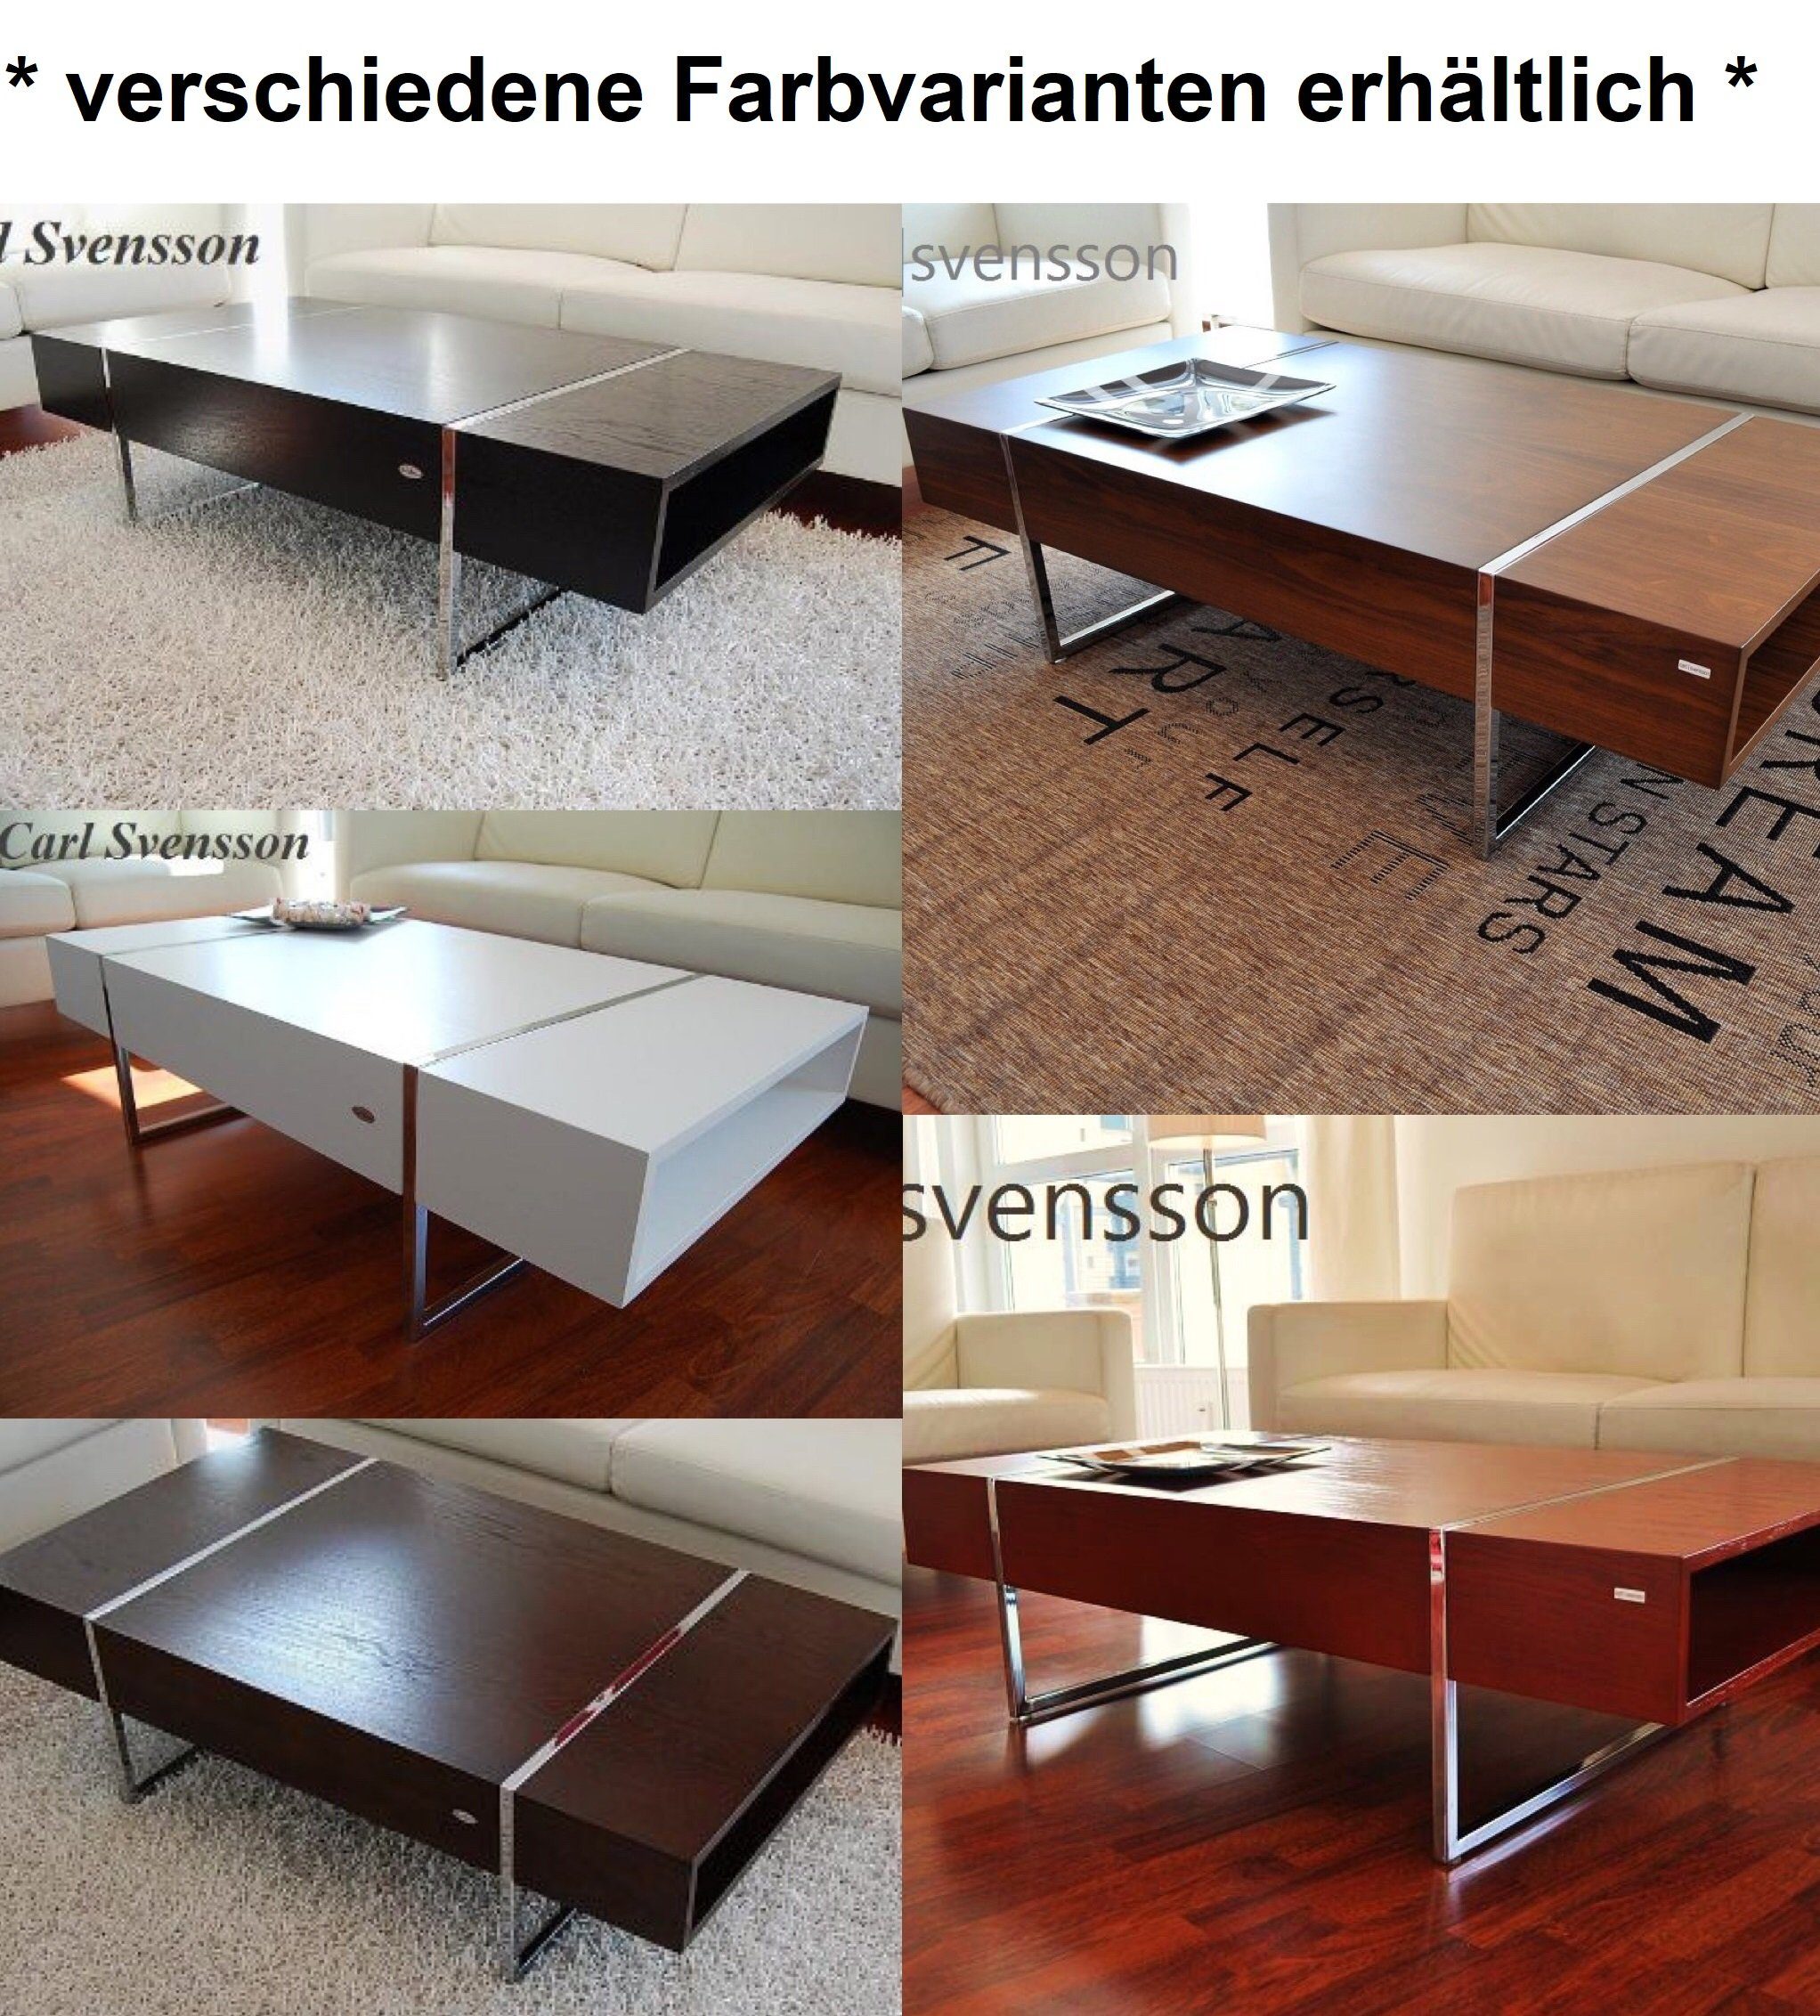 Walnuss Wenge Wenge Couchtisch svensson Design / Couchtisch Tisch N-111 Svensson carl Walnuss Chrom Carl